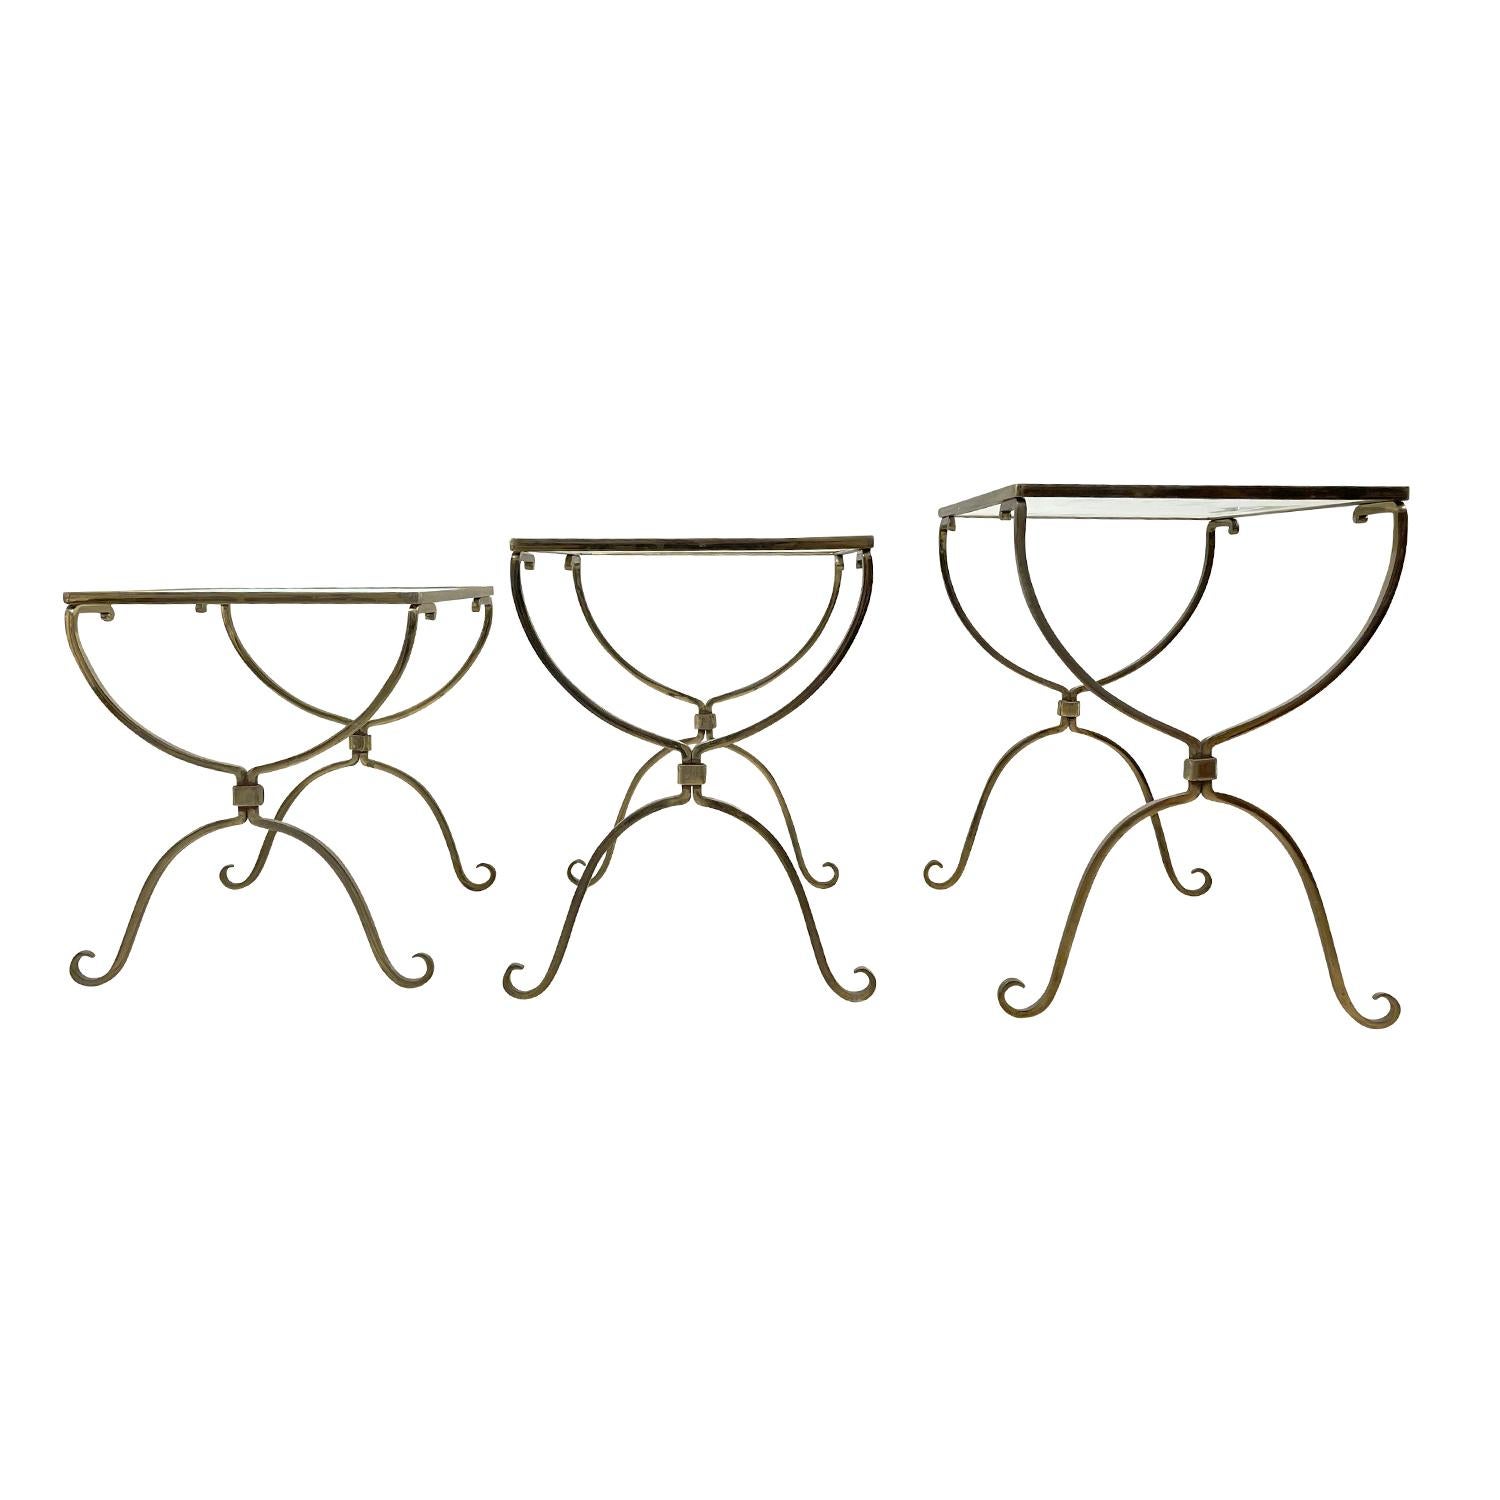 Un ensemble Art Déco français vintage de trois tables gigognes de style Bagnes en laiton travaillé à la main, en bon état. Les petites tables d'appoint détaillées sont composées d'un plateau en verre fumé d'origine. Décoloration mineure sur le verre